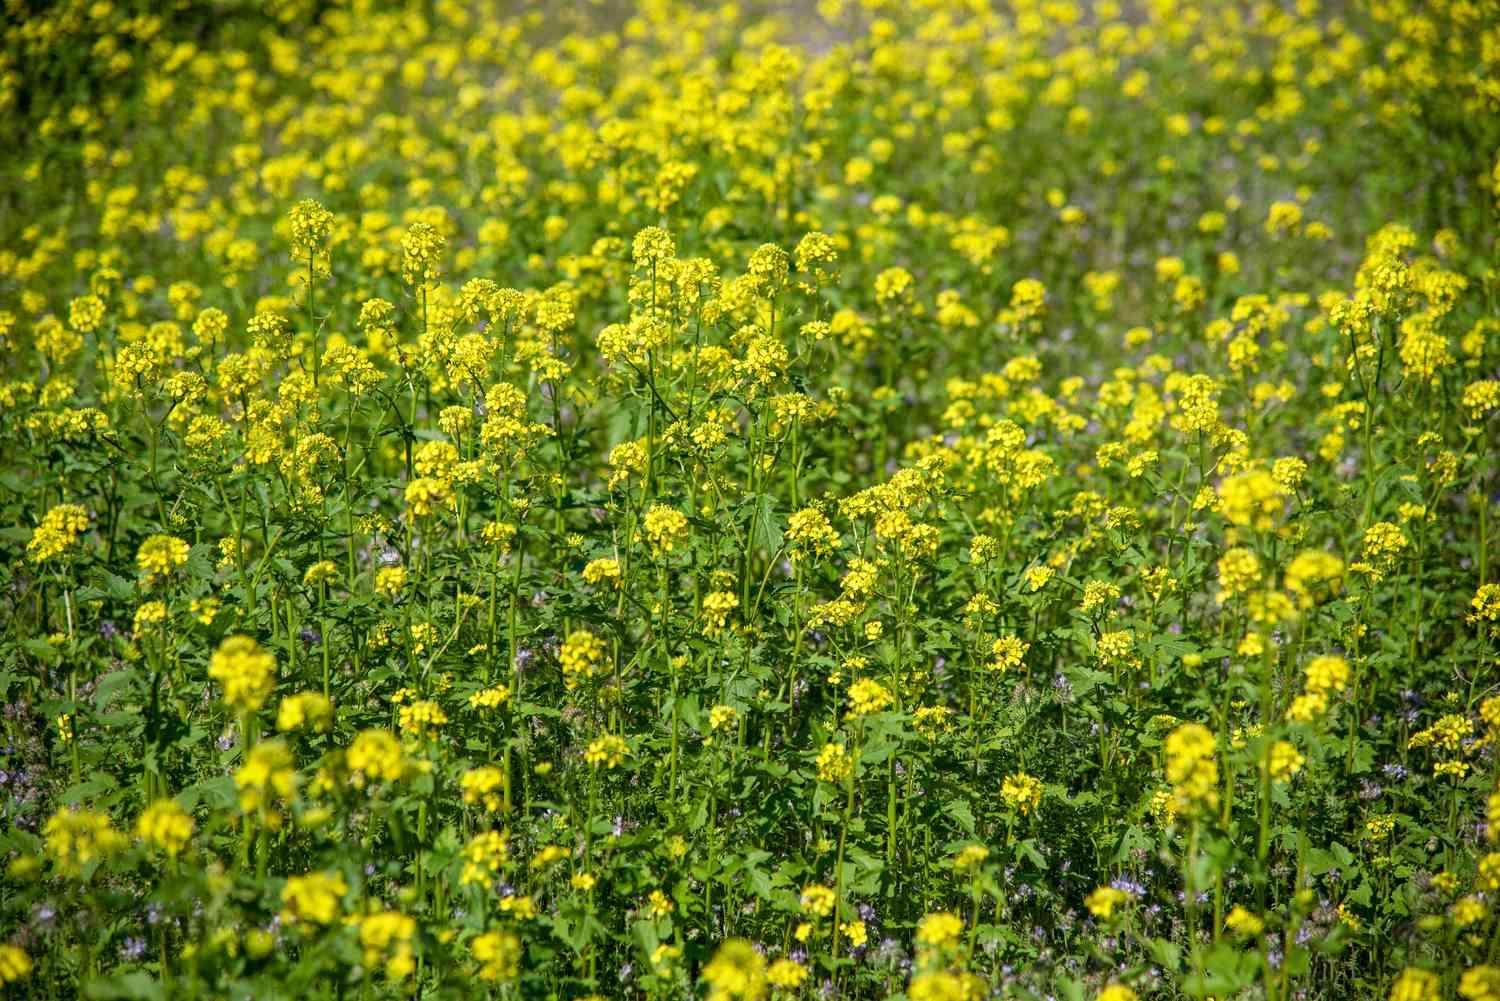 Plantas de hierba mostaza negra con pequeñas flores amarillas agrupadas en el campo